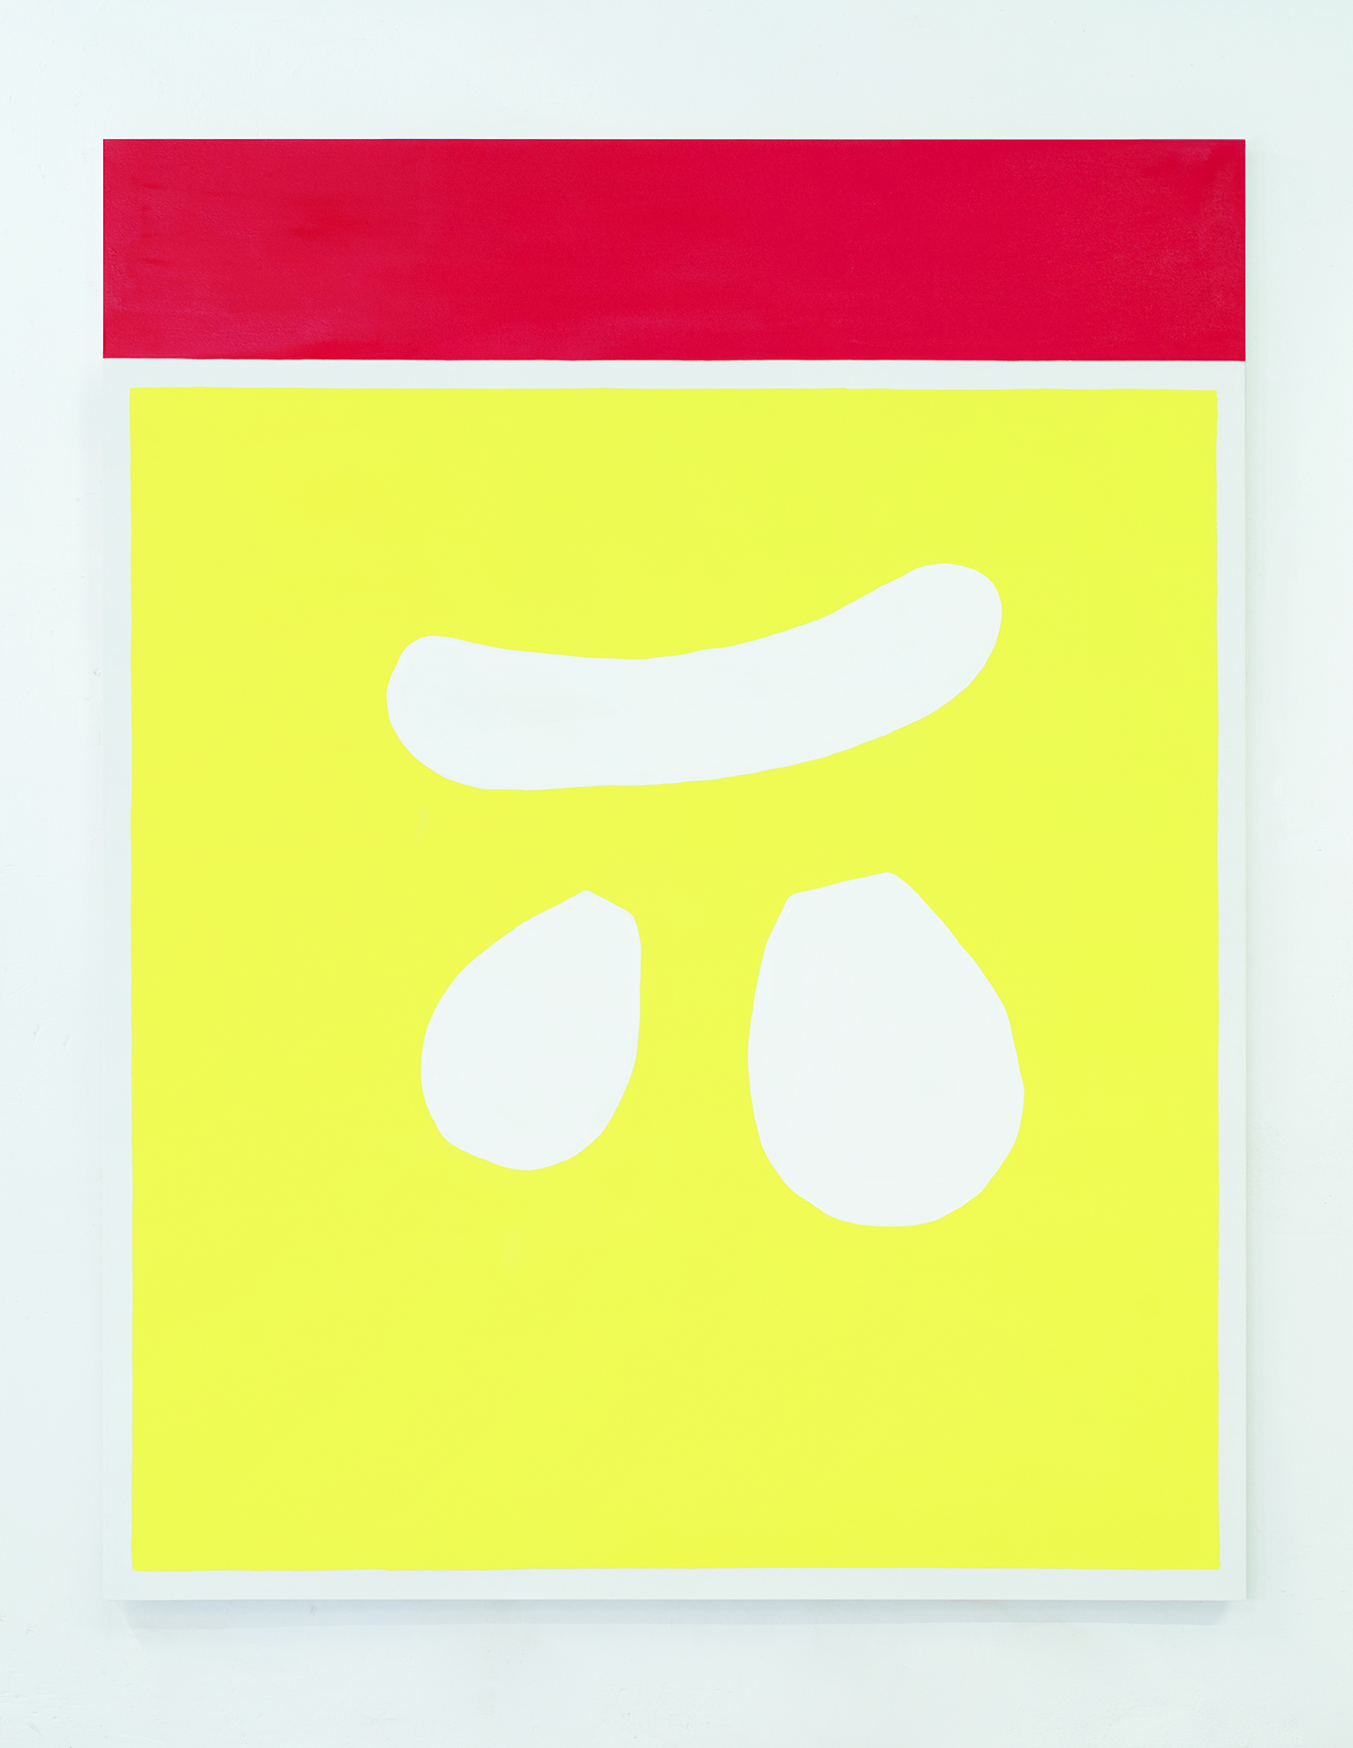 Holger Endres, Le grand poulet (jaune), 2021, oil on cotton, 180 x 140 cm